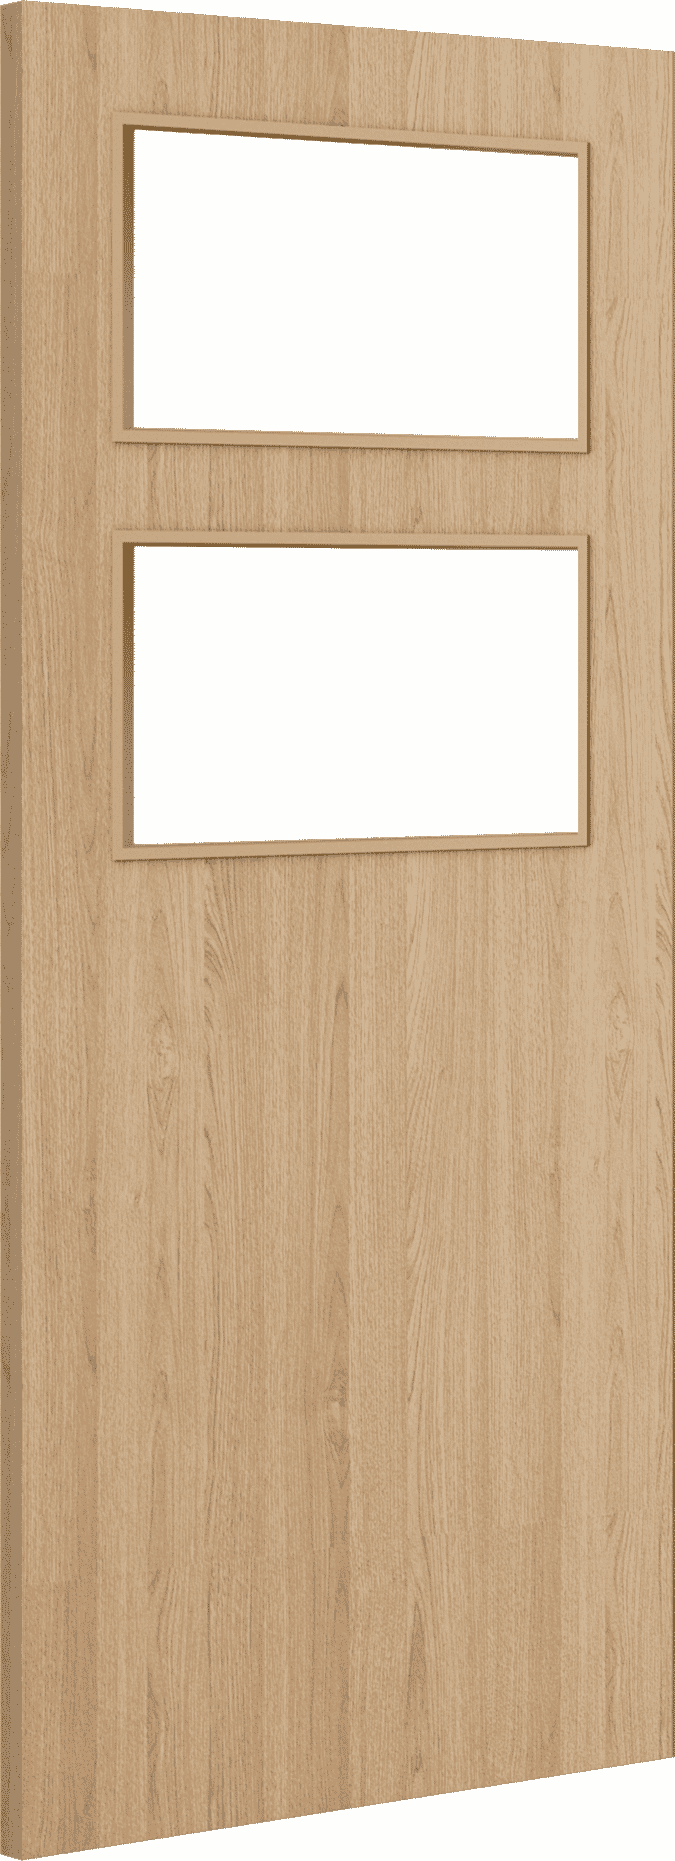 1981mm x 762mm x 54mm (30") Architectural Oak 02 Clear Glazed - Prefinished FD60 Fire Door Blank